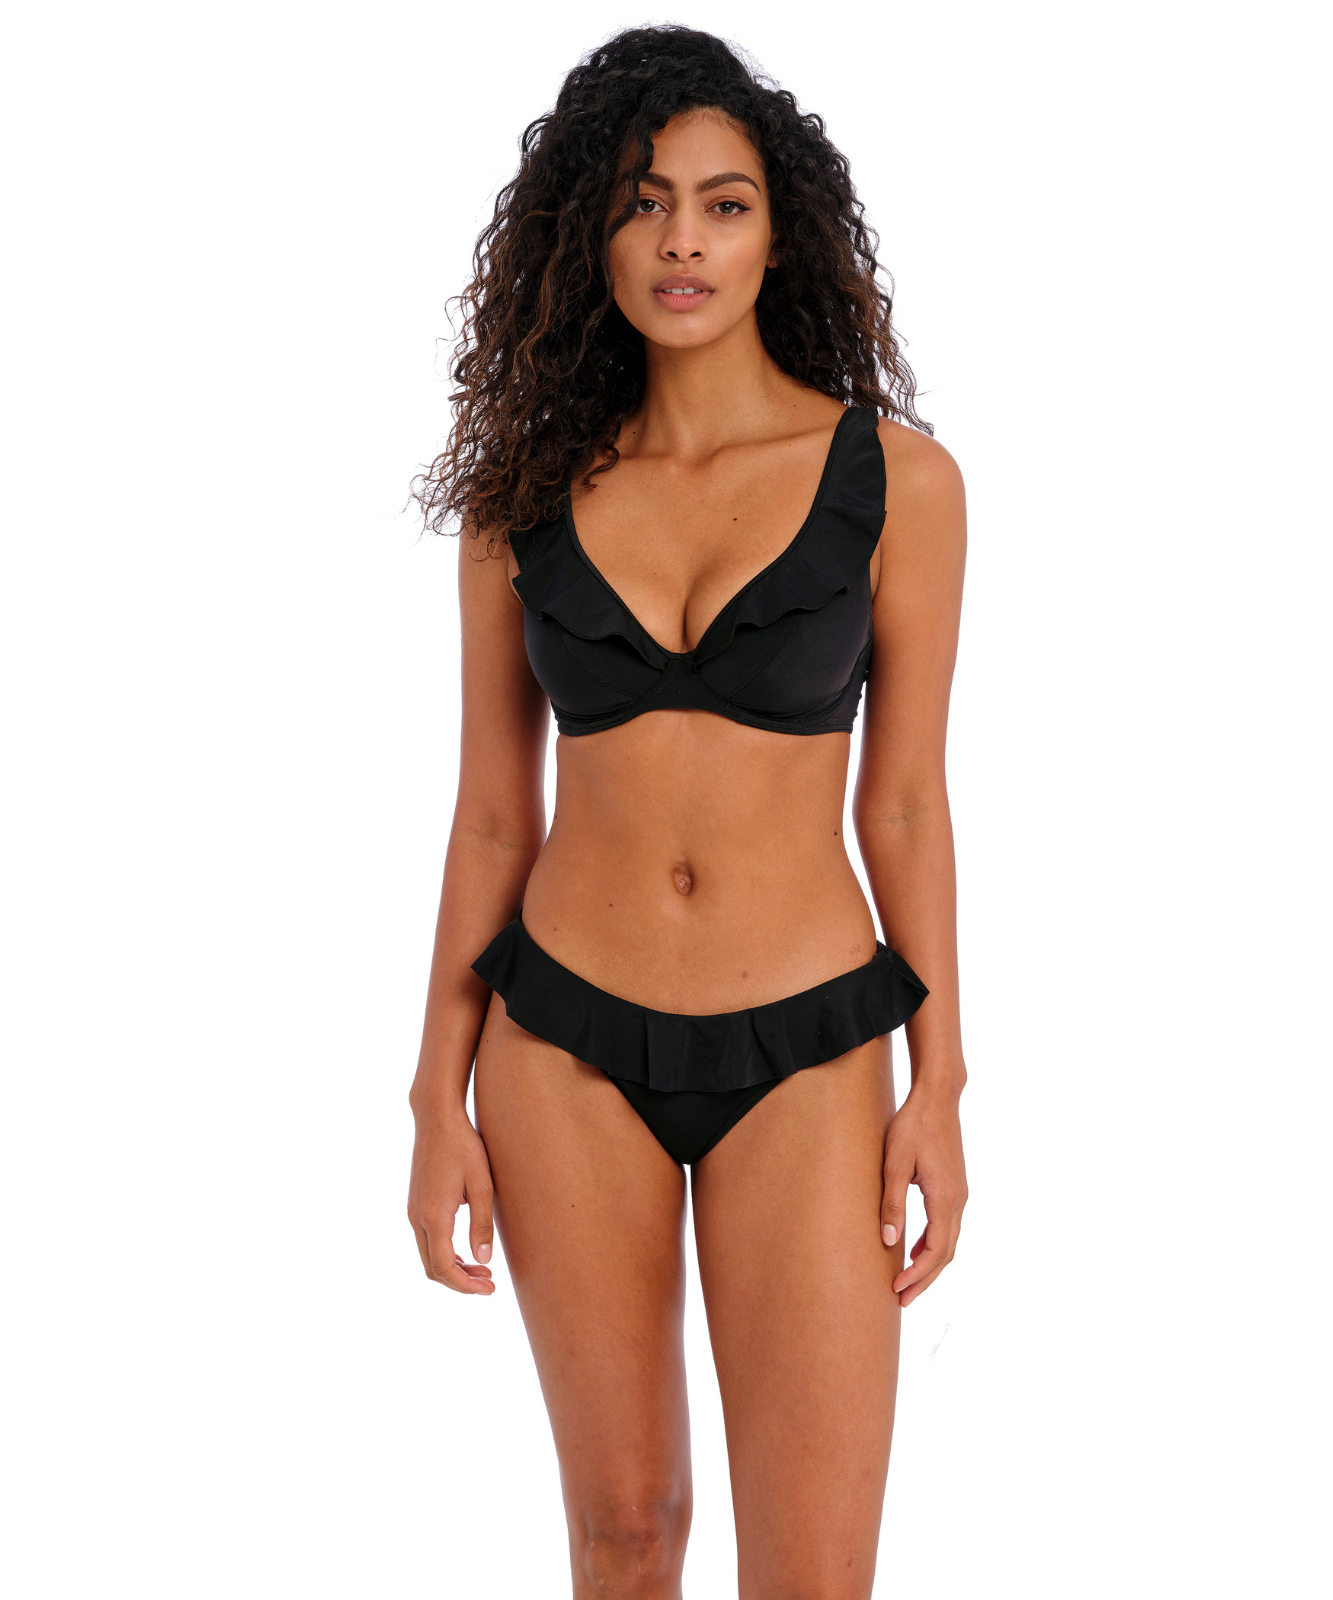 Jewel Cove Apex Bikini Top (Black) by Freya - Bikinis